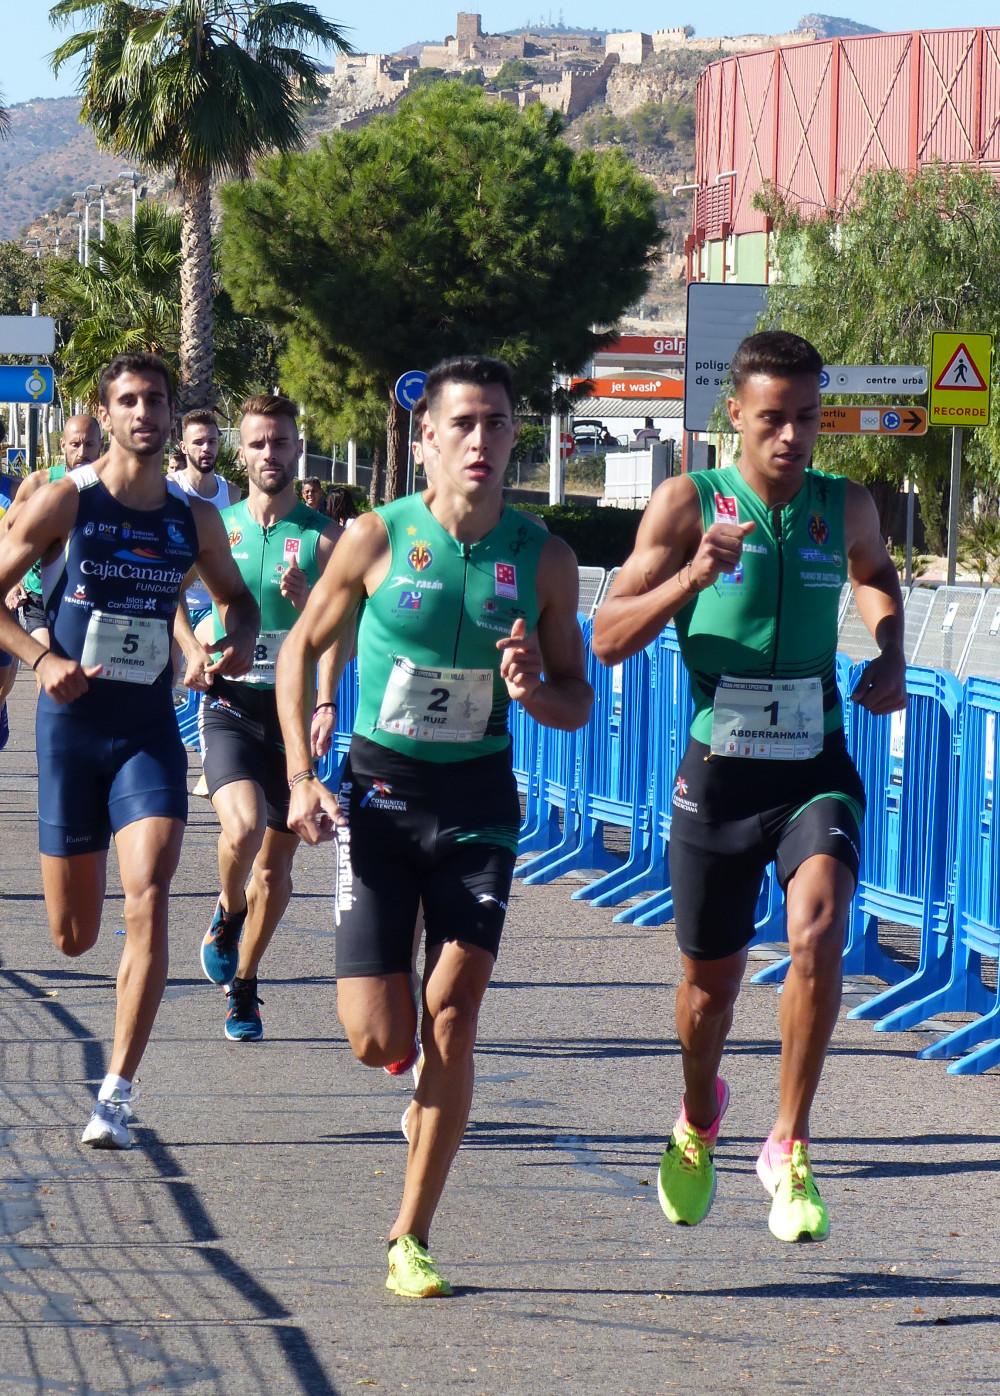 El Atletismo Playas de inicia la temporada con victoria de Víctor en Sagunto - Castellon Información